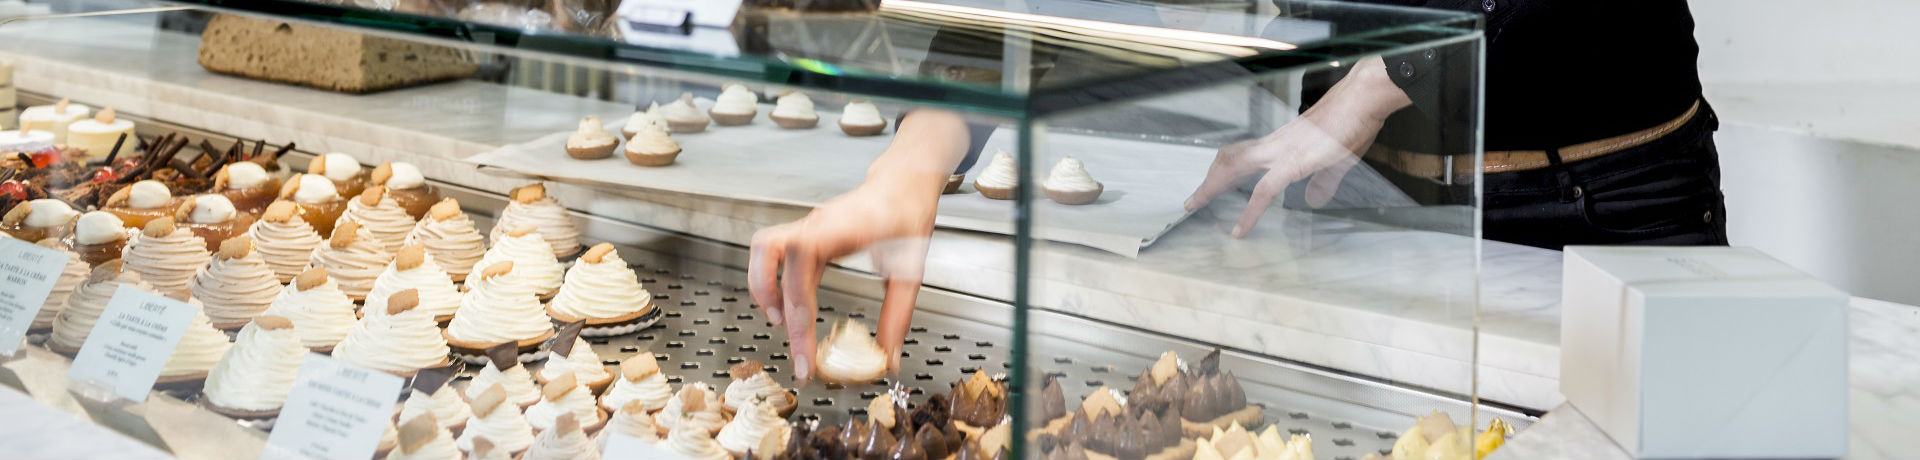 De nouvelles fournées d’économies d’énergie pour les boulangeries-pâtisseries, avec EDF Entreprises